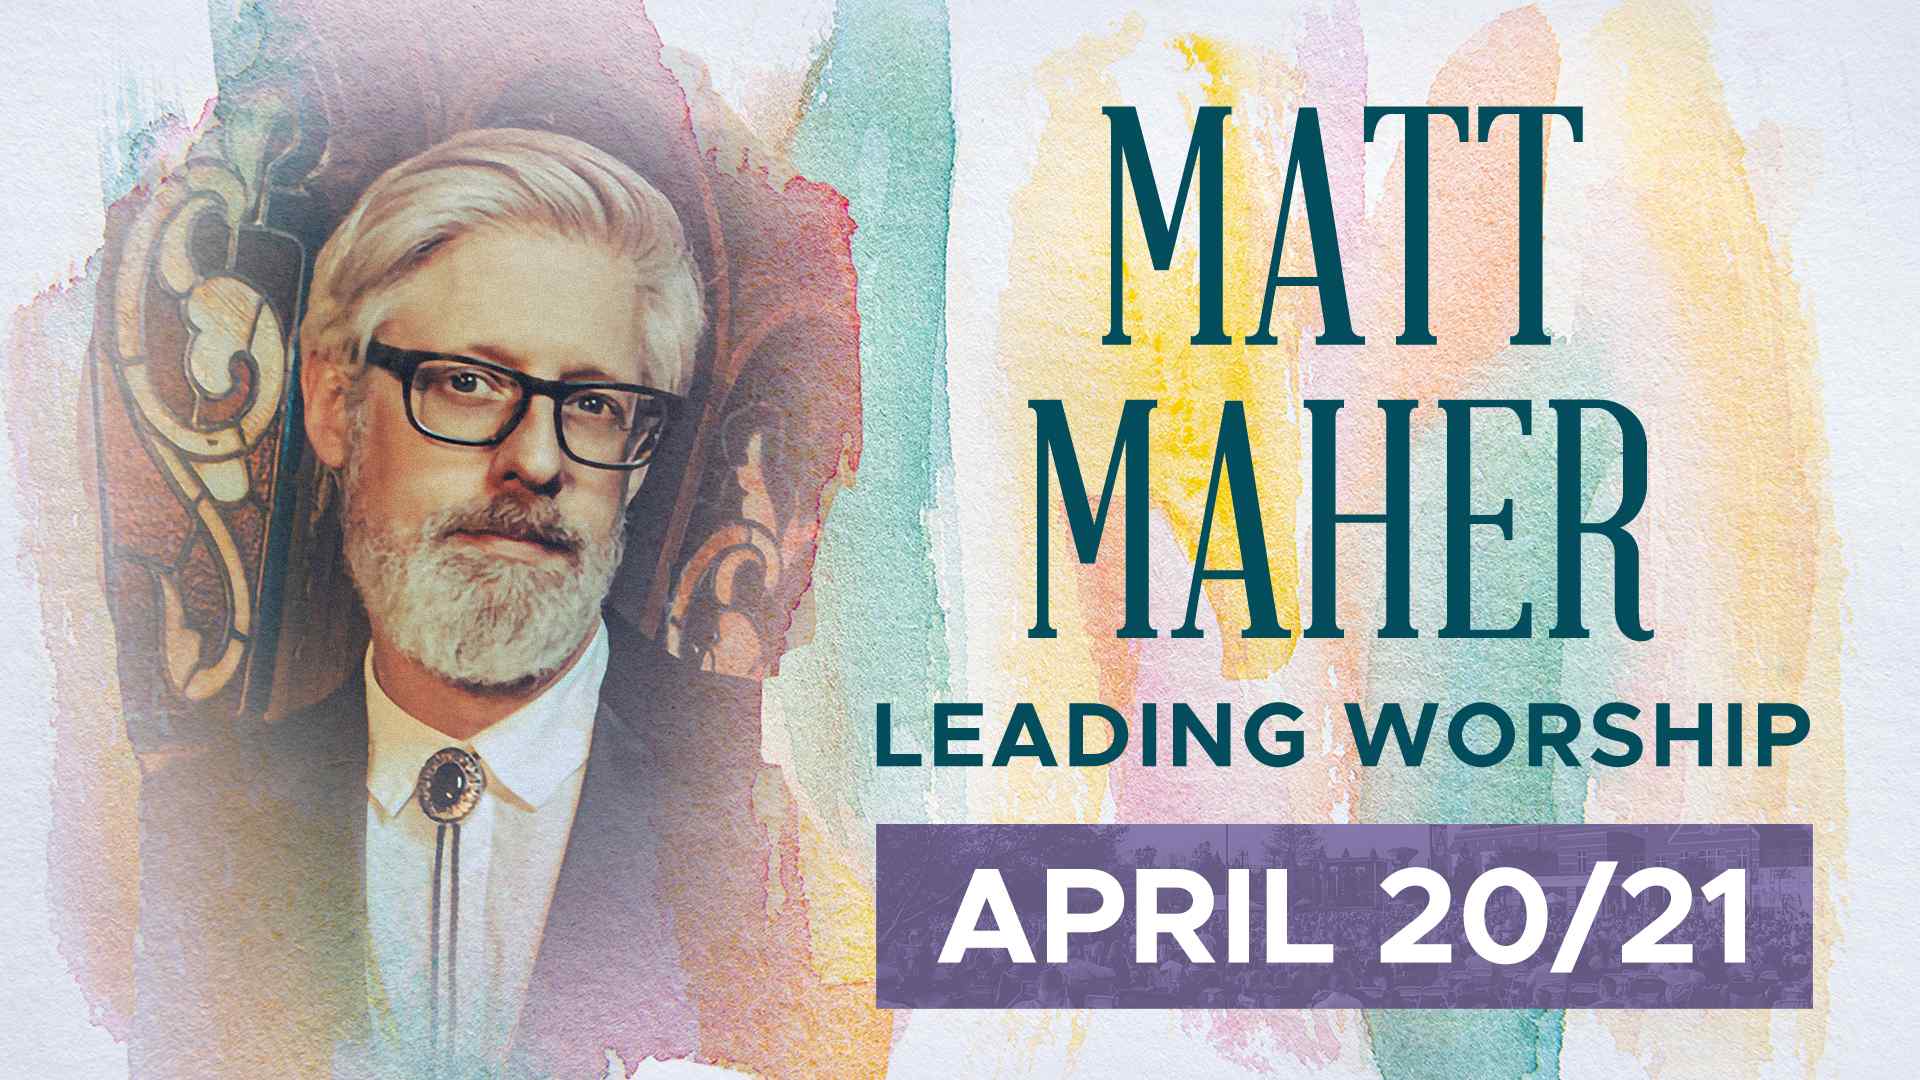 Matt Maher: April 20/21